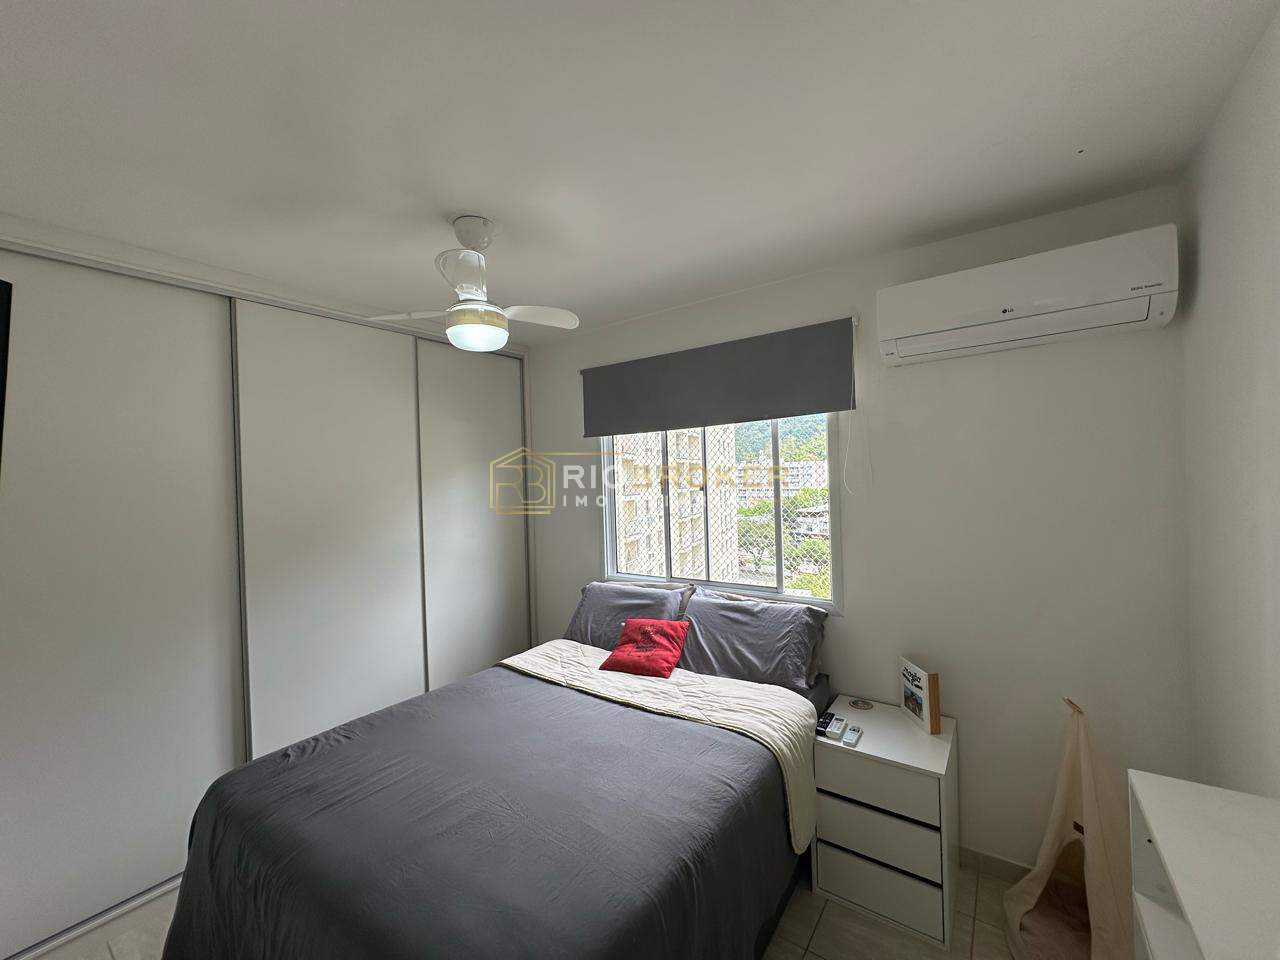 Apartamento de 2 quartos à venda - Jacarepaguá - Condomínio Rota do Sol